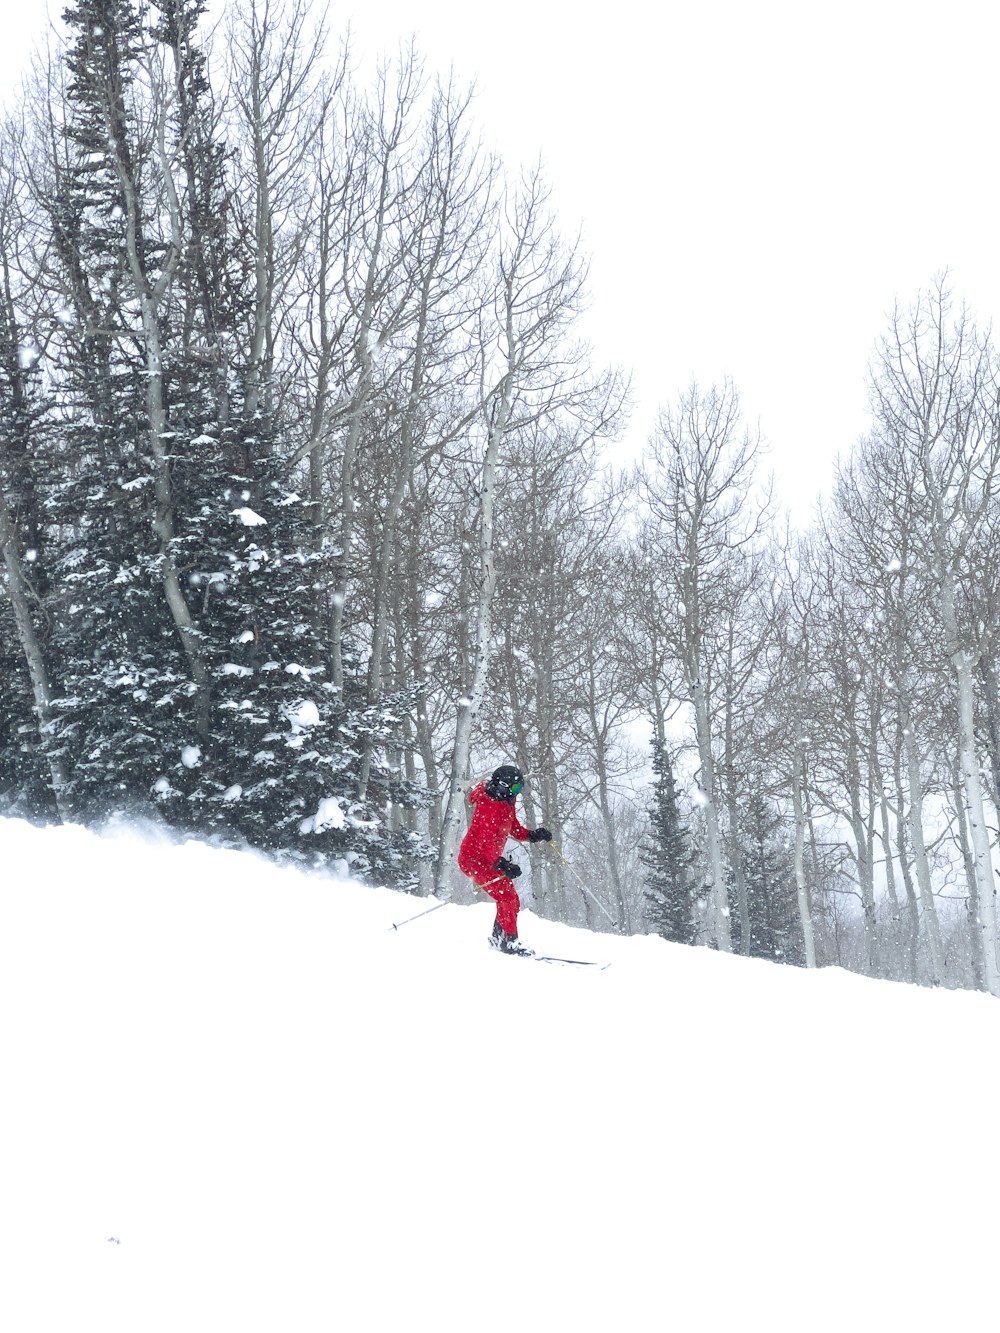 une personne qui descend une colline enneigée à ski